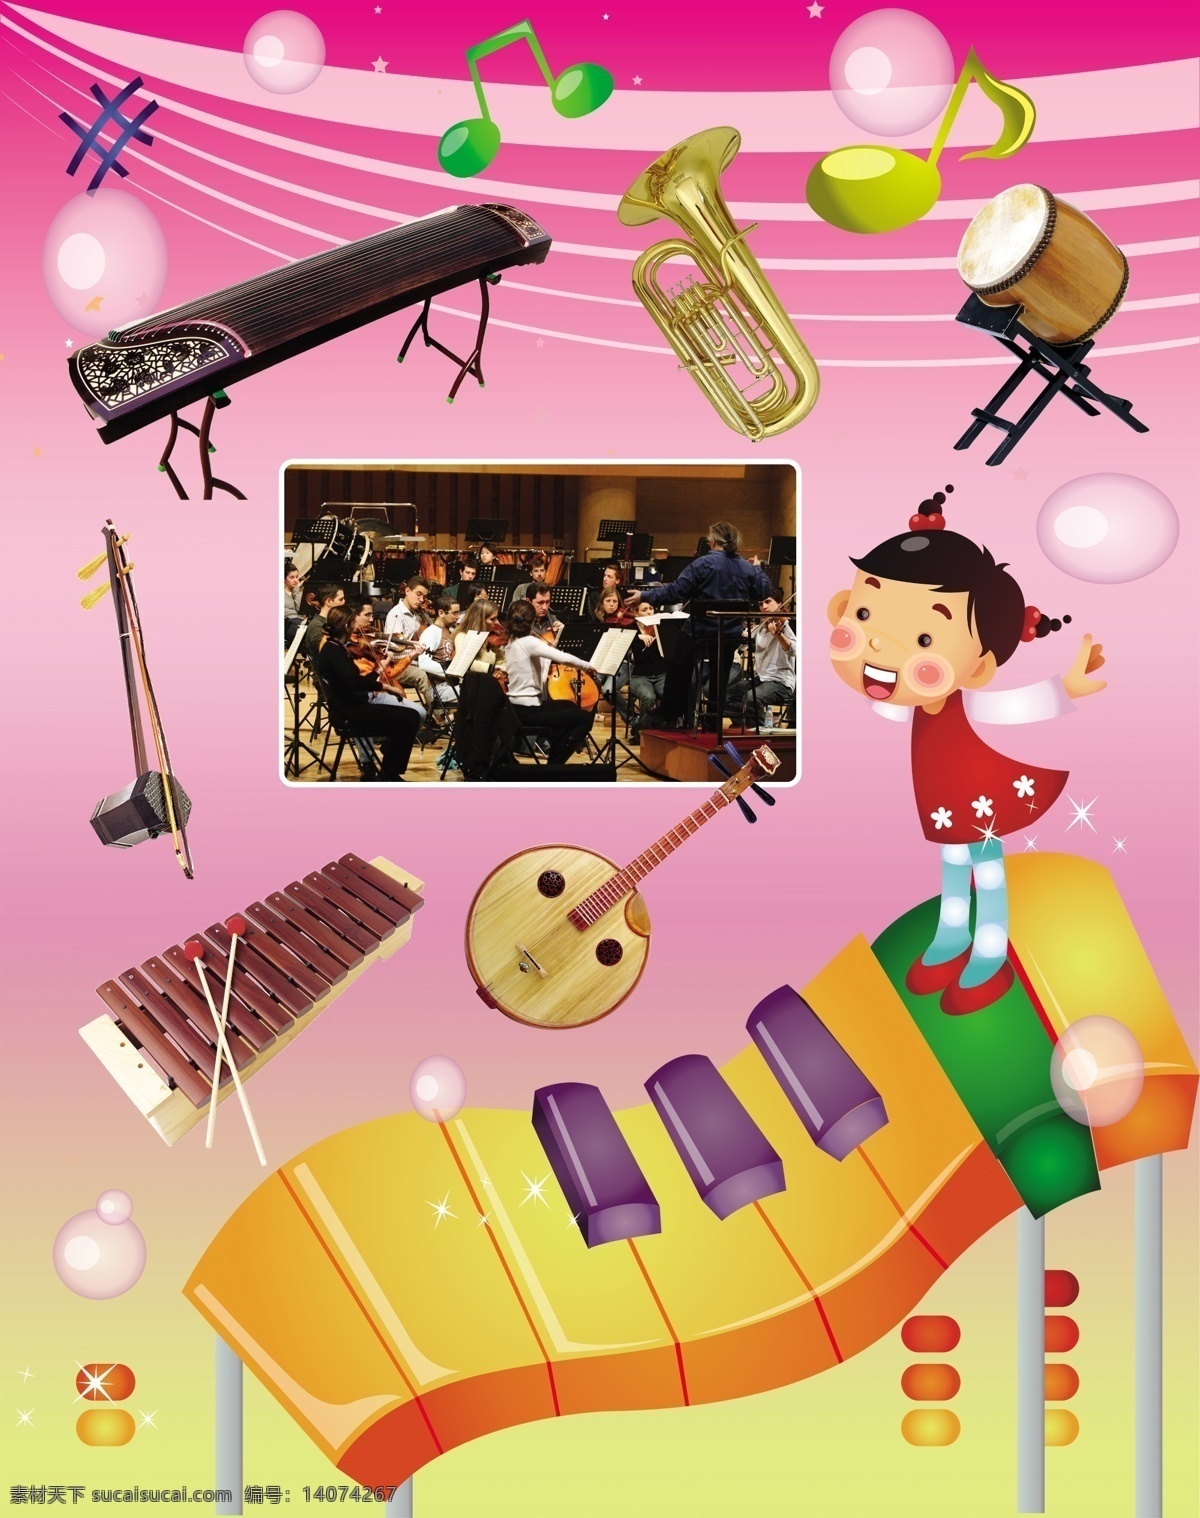 音乐 教室 挂图 背景 卡通人物 乐器 音符 音乐教室挂图 psd源文件